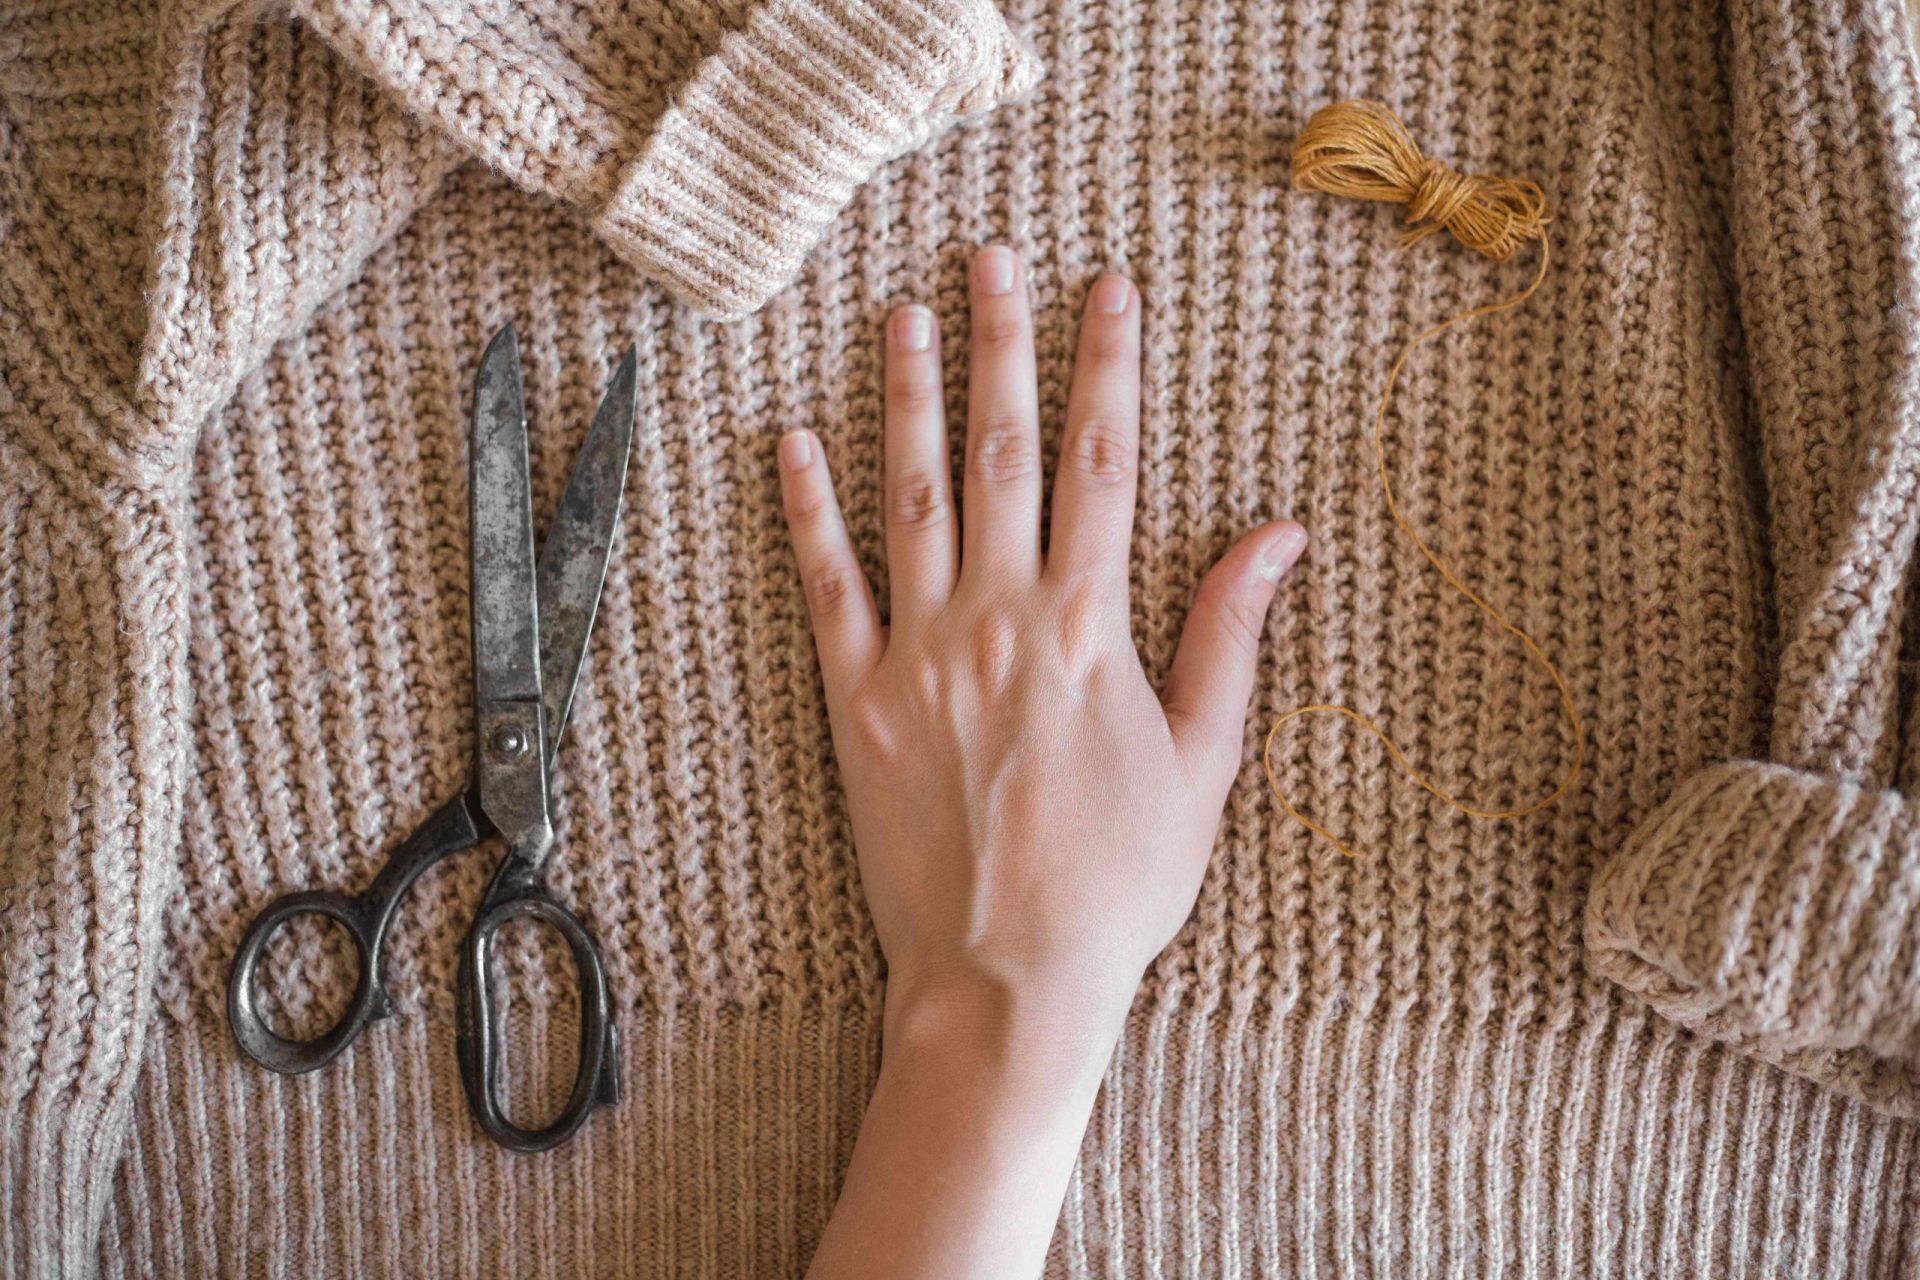 la mano se extiende sobre un jersey grueso de color canela para medirlo con tijeras e hilo